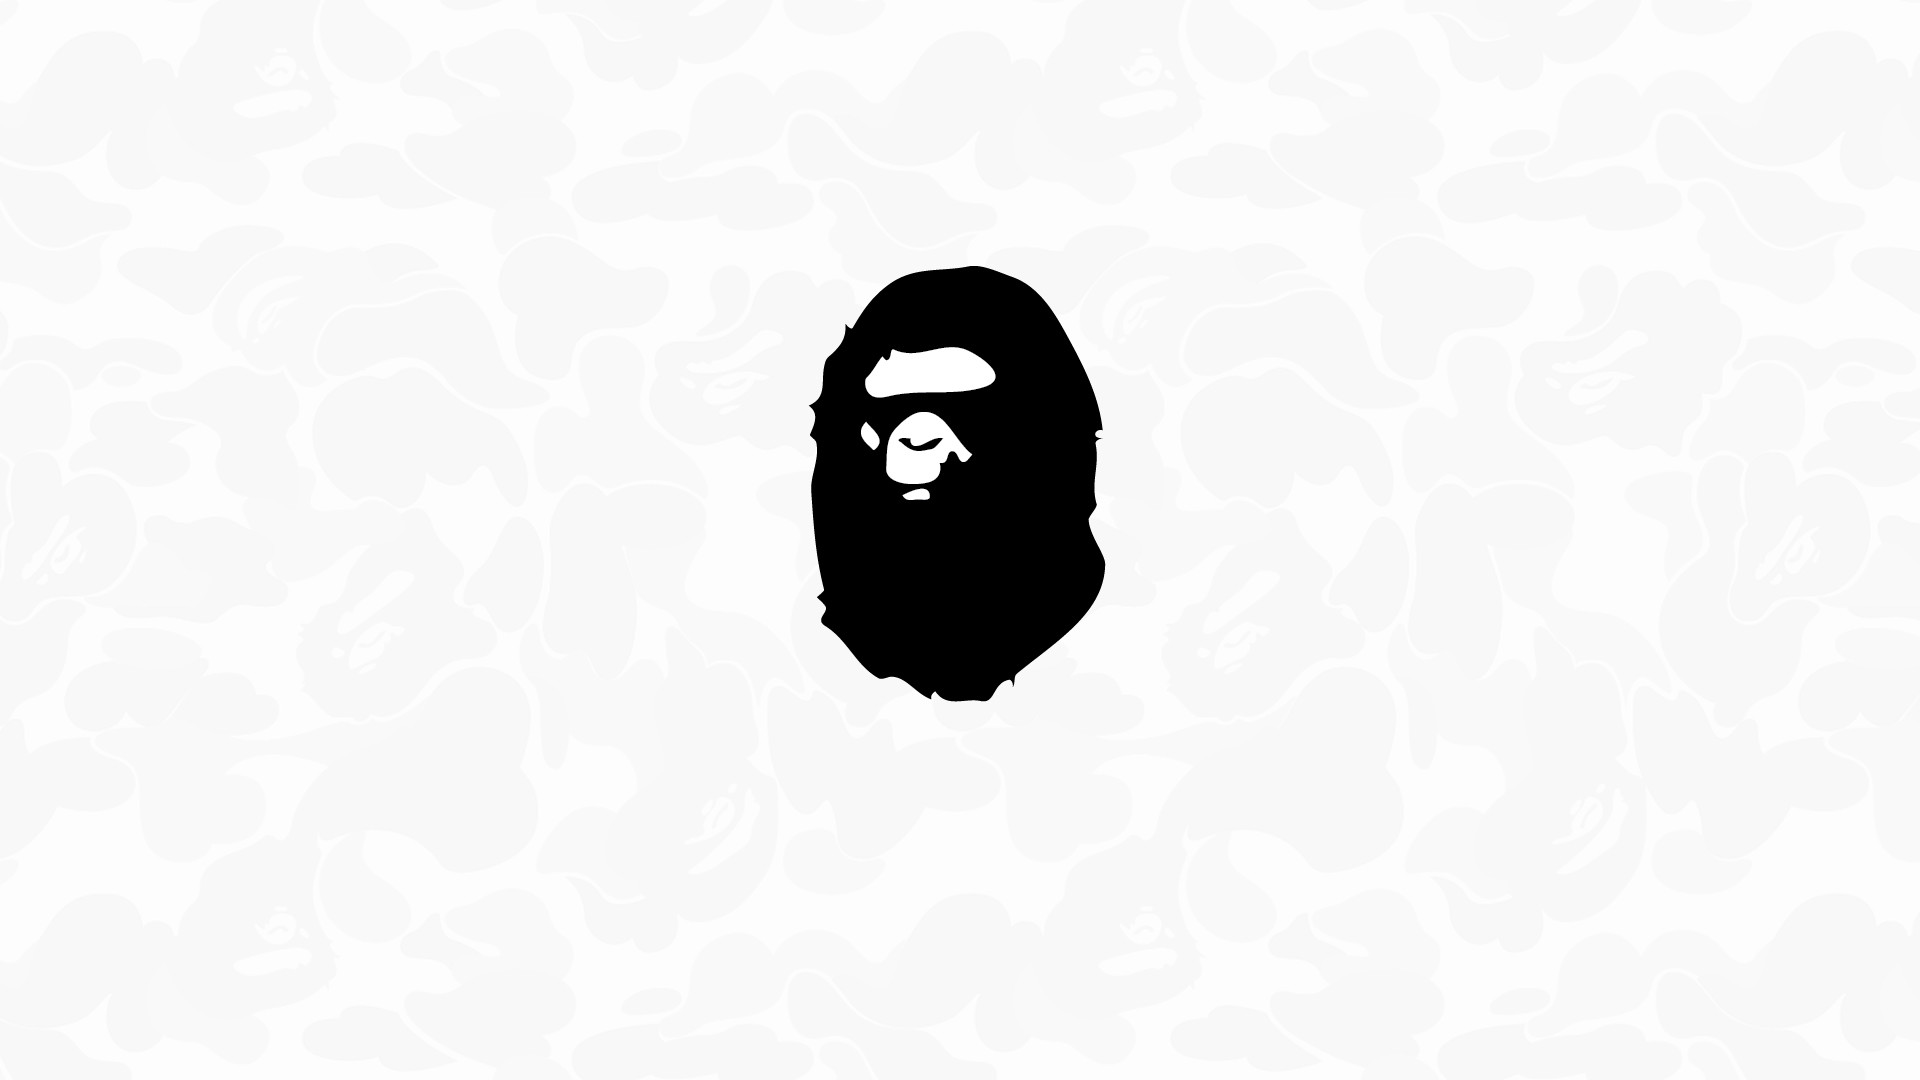 carta da parati scimmia da bagno,illustrazione,font,grafica,bianco e nero,arte